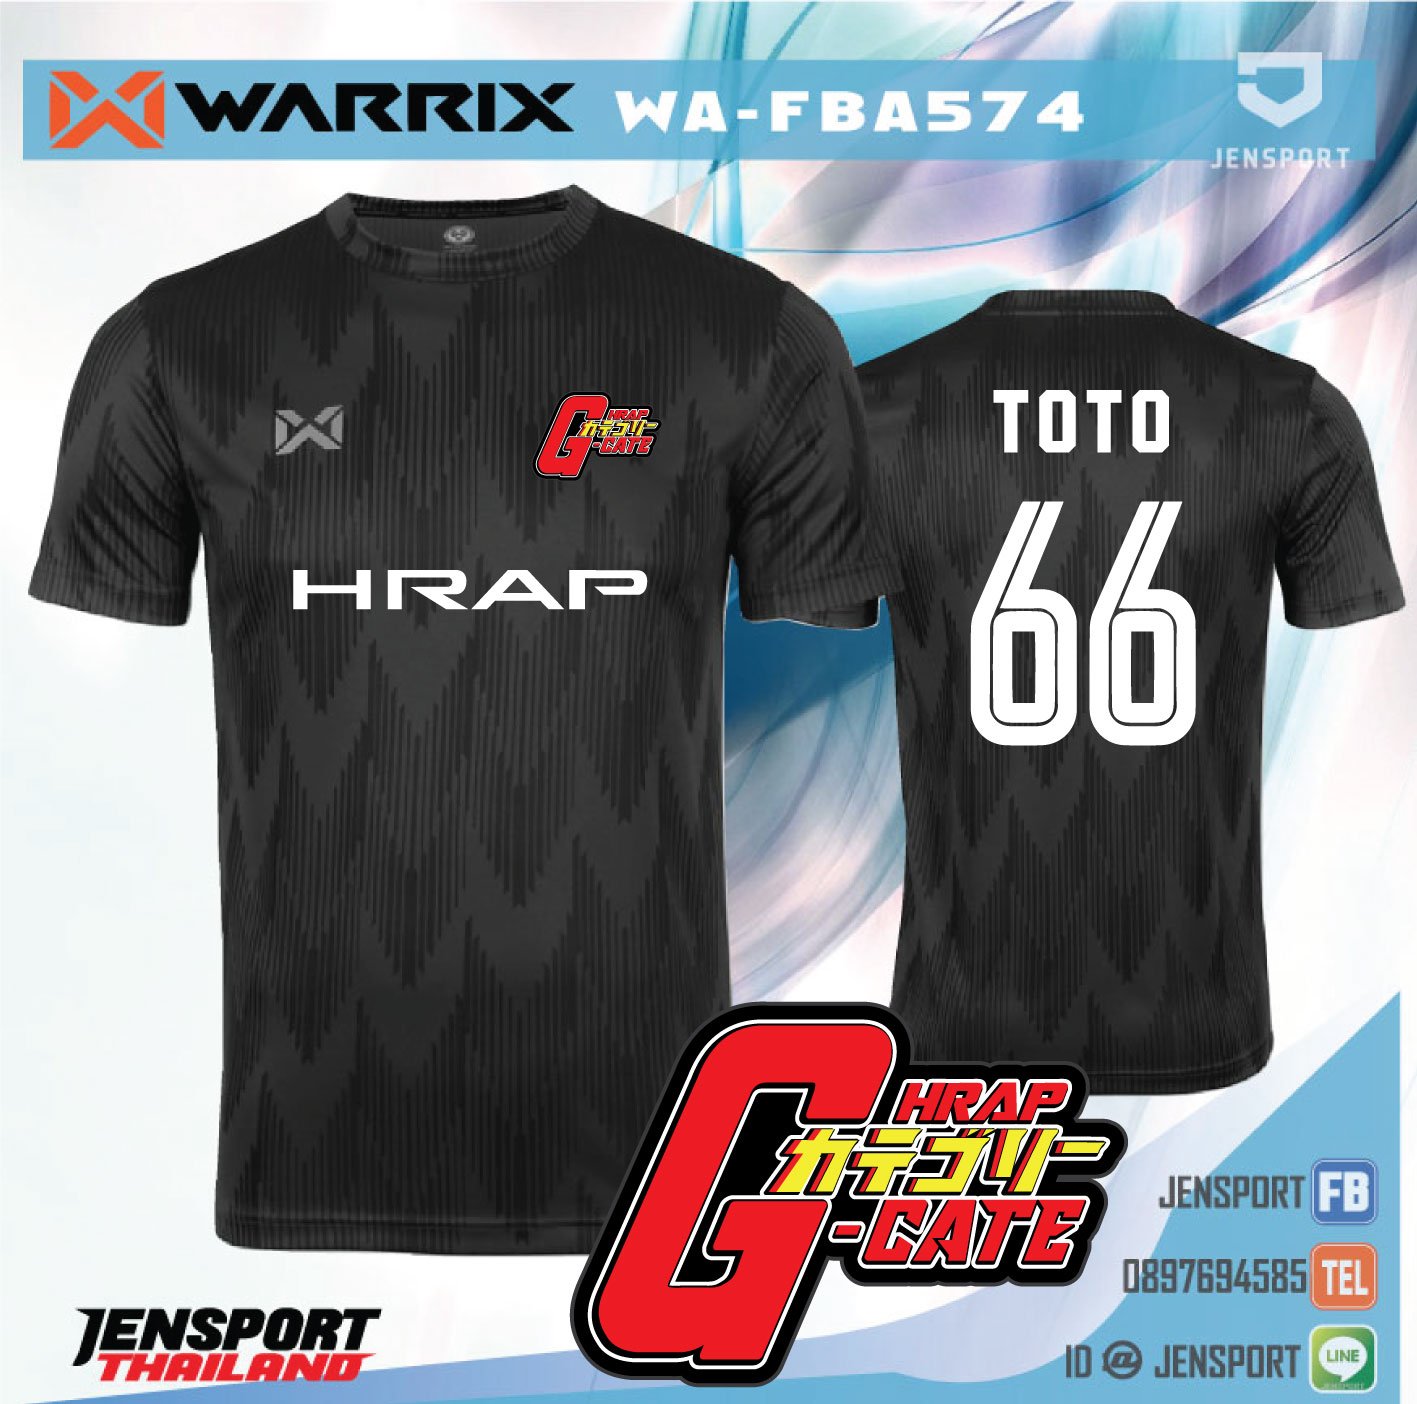 WARRIX WA-FBA574 HONDA GHARP-2020 TEAM